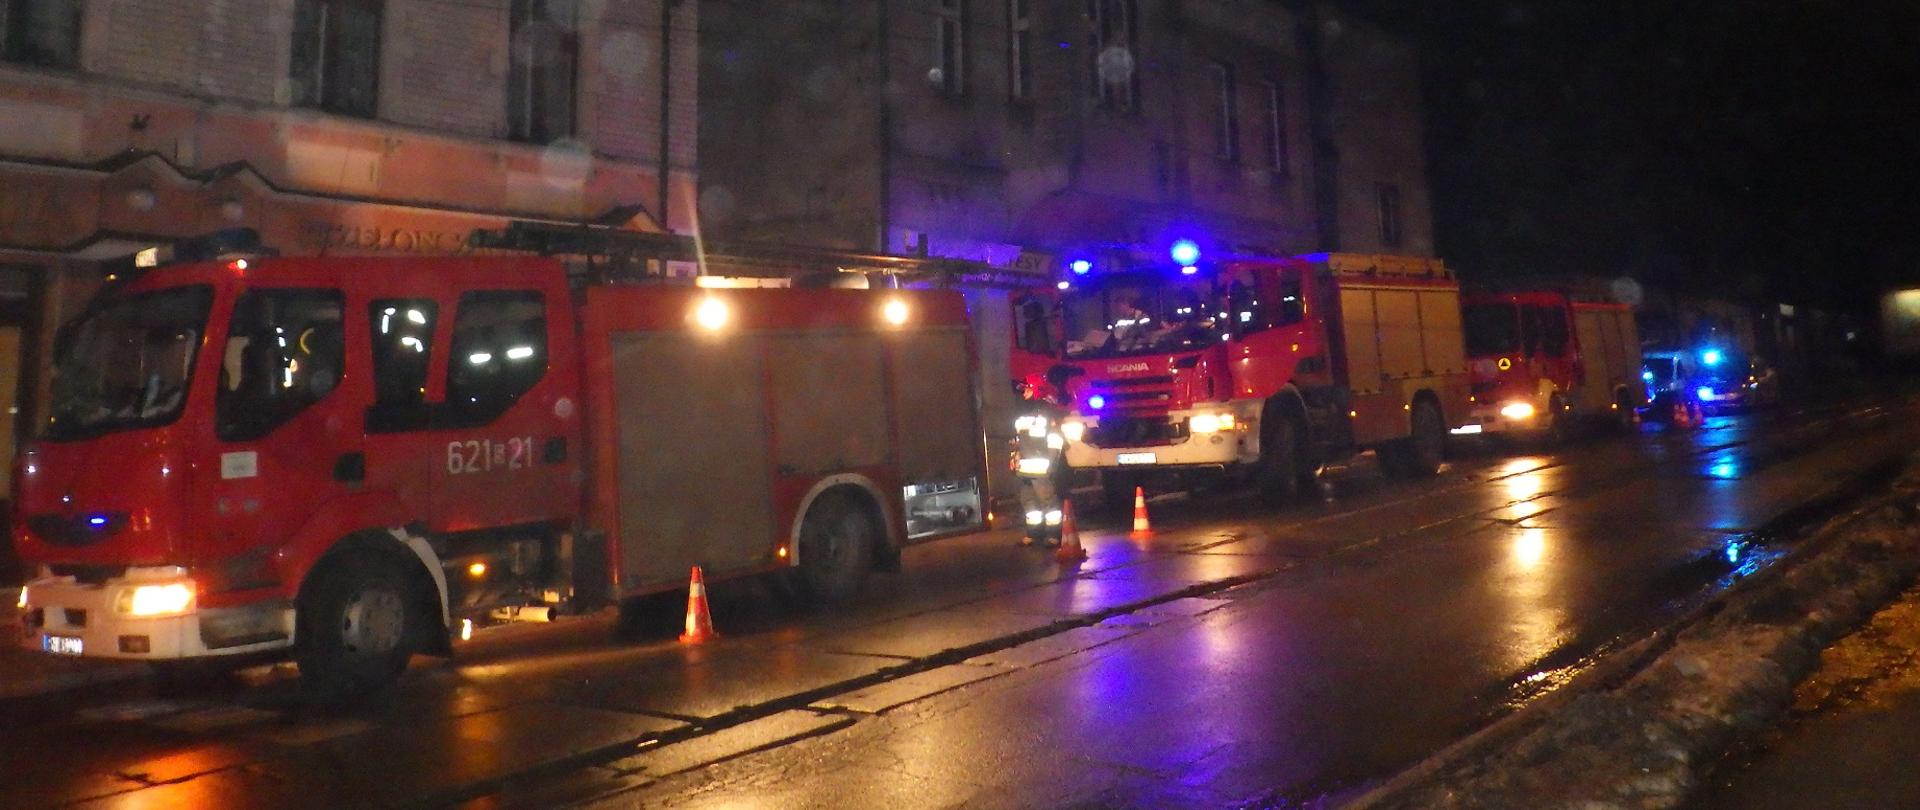 Zdjęcie przedstawia samochody pożarnicze stojące na ulicy w pobliżu budynku, w których wybuchł pożar. Zdjęcie wykonane w nocy.